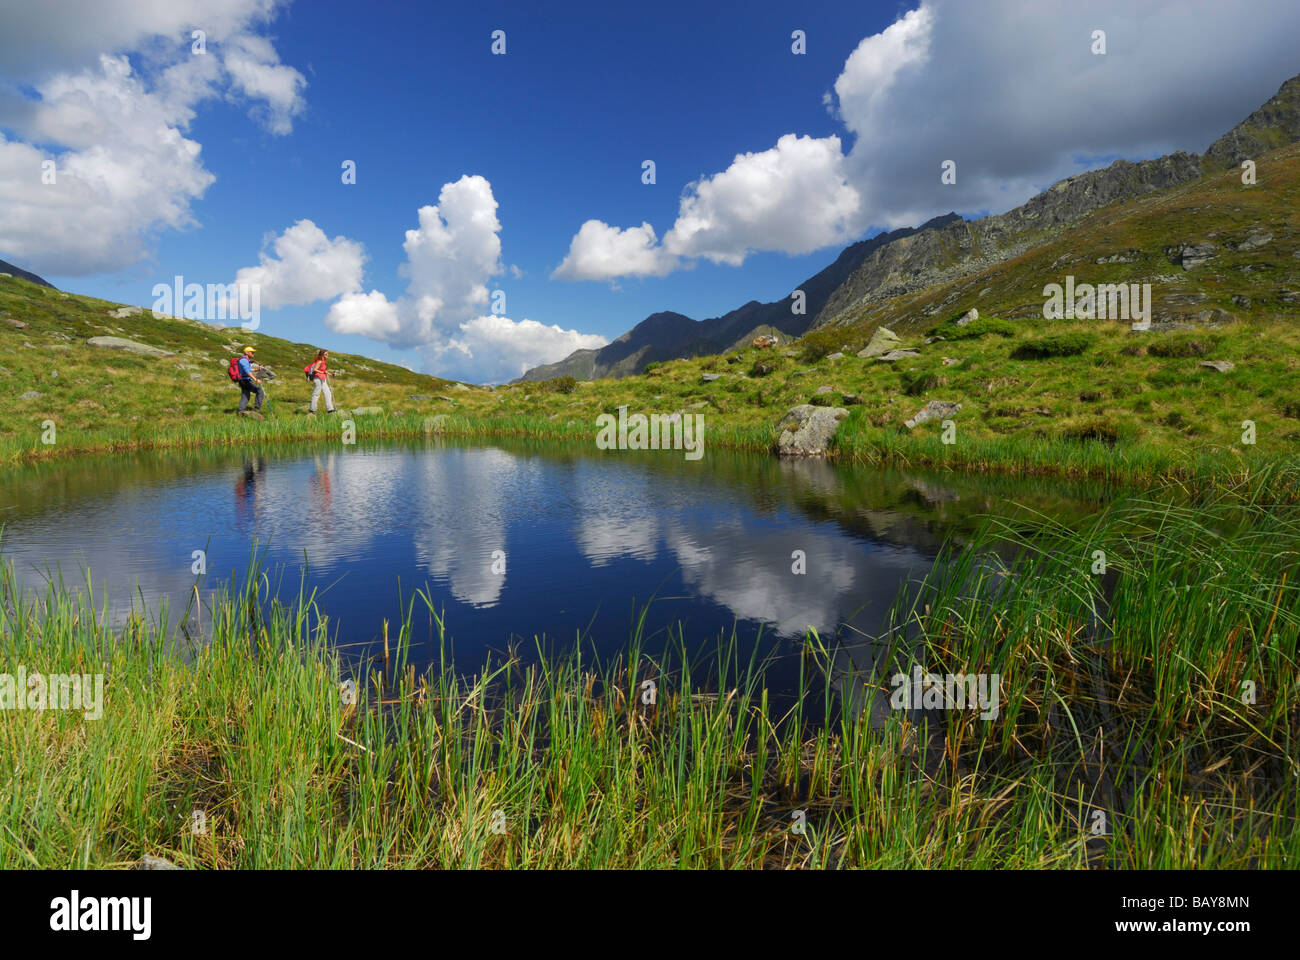 couple hiking near small lake, Stubaier Alpen range, Stubai, Tyrol, Austria Stock Photo